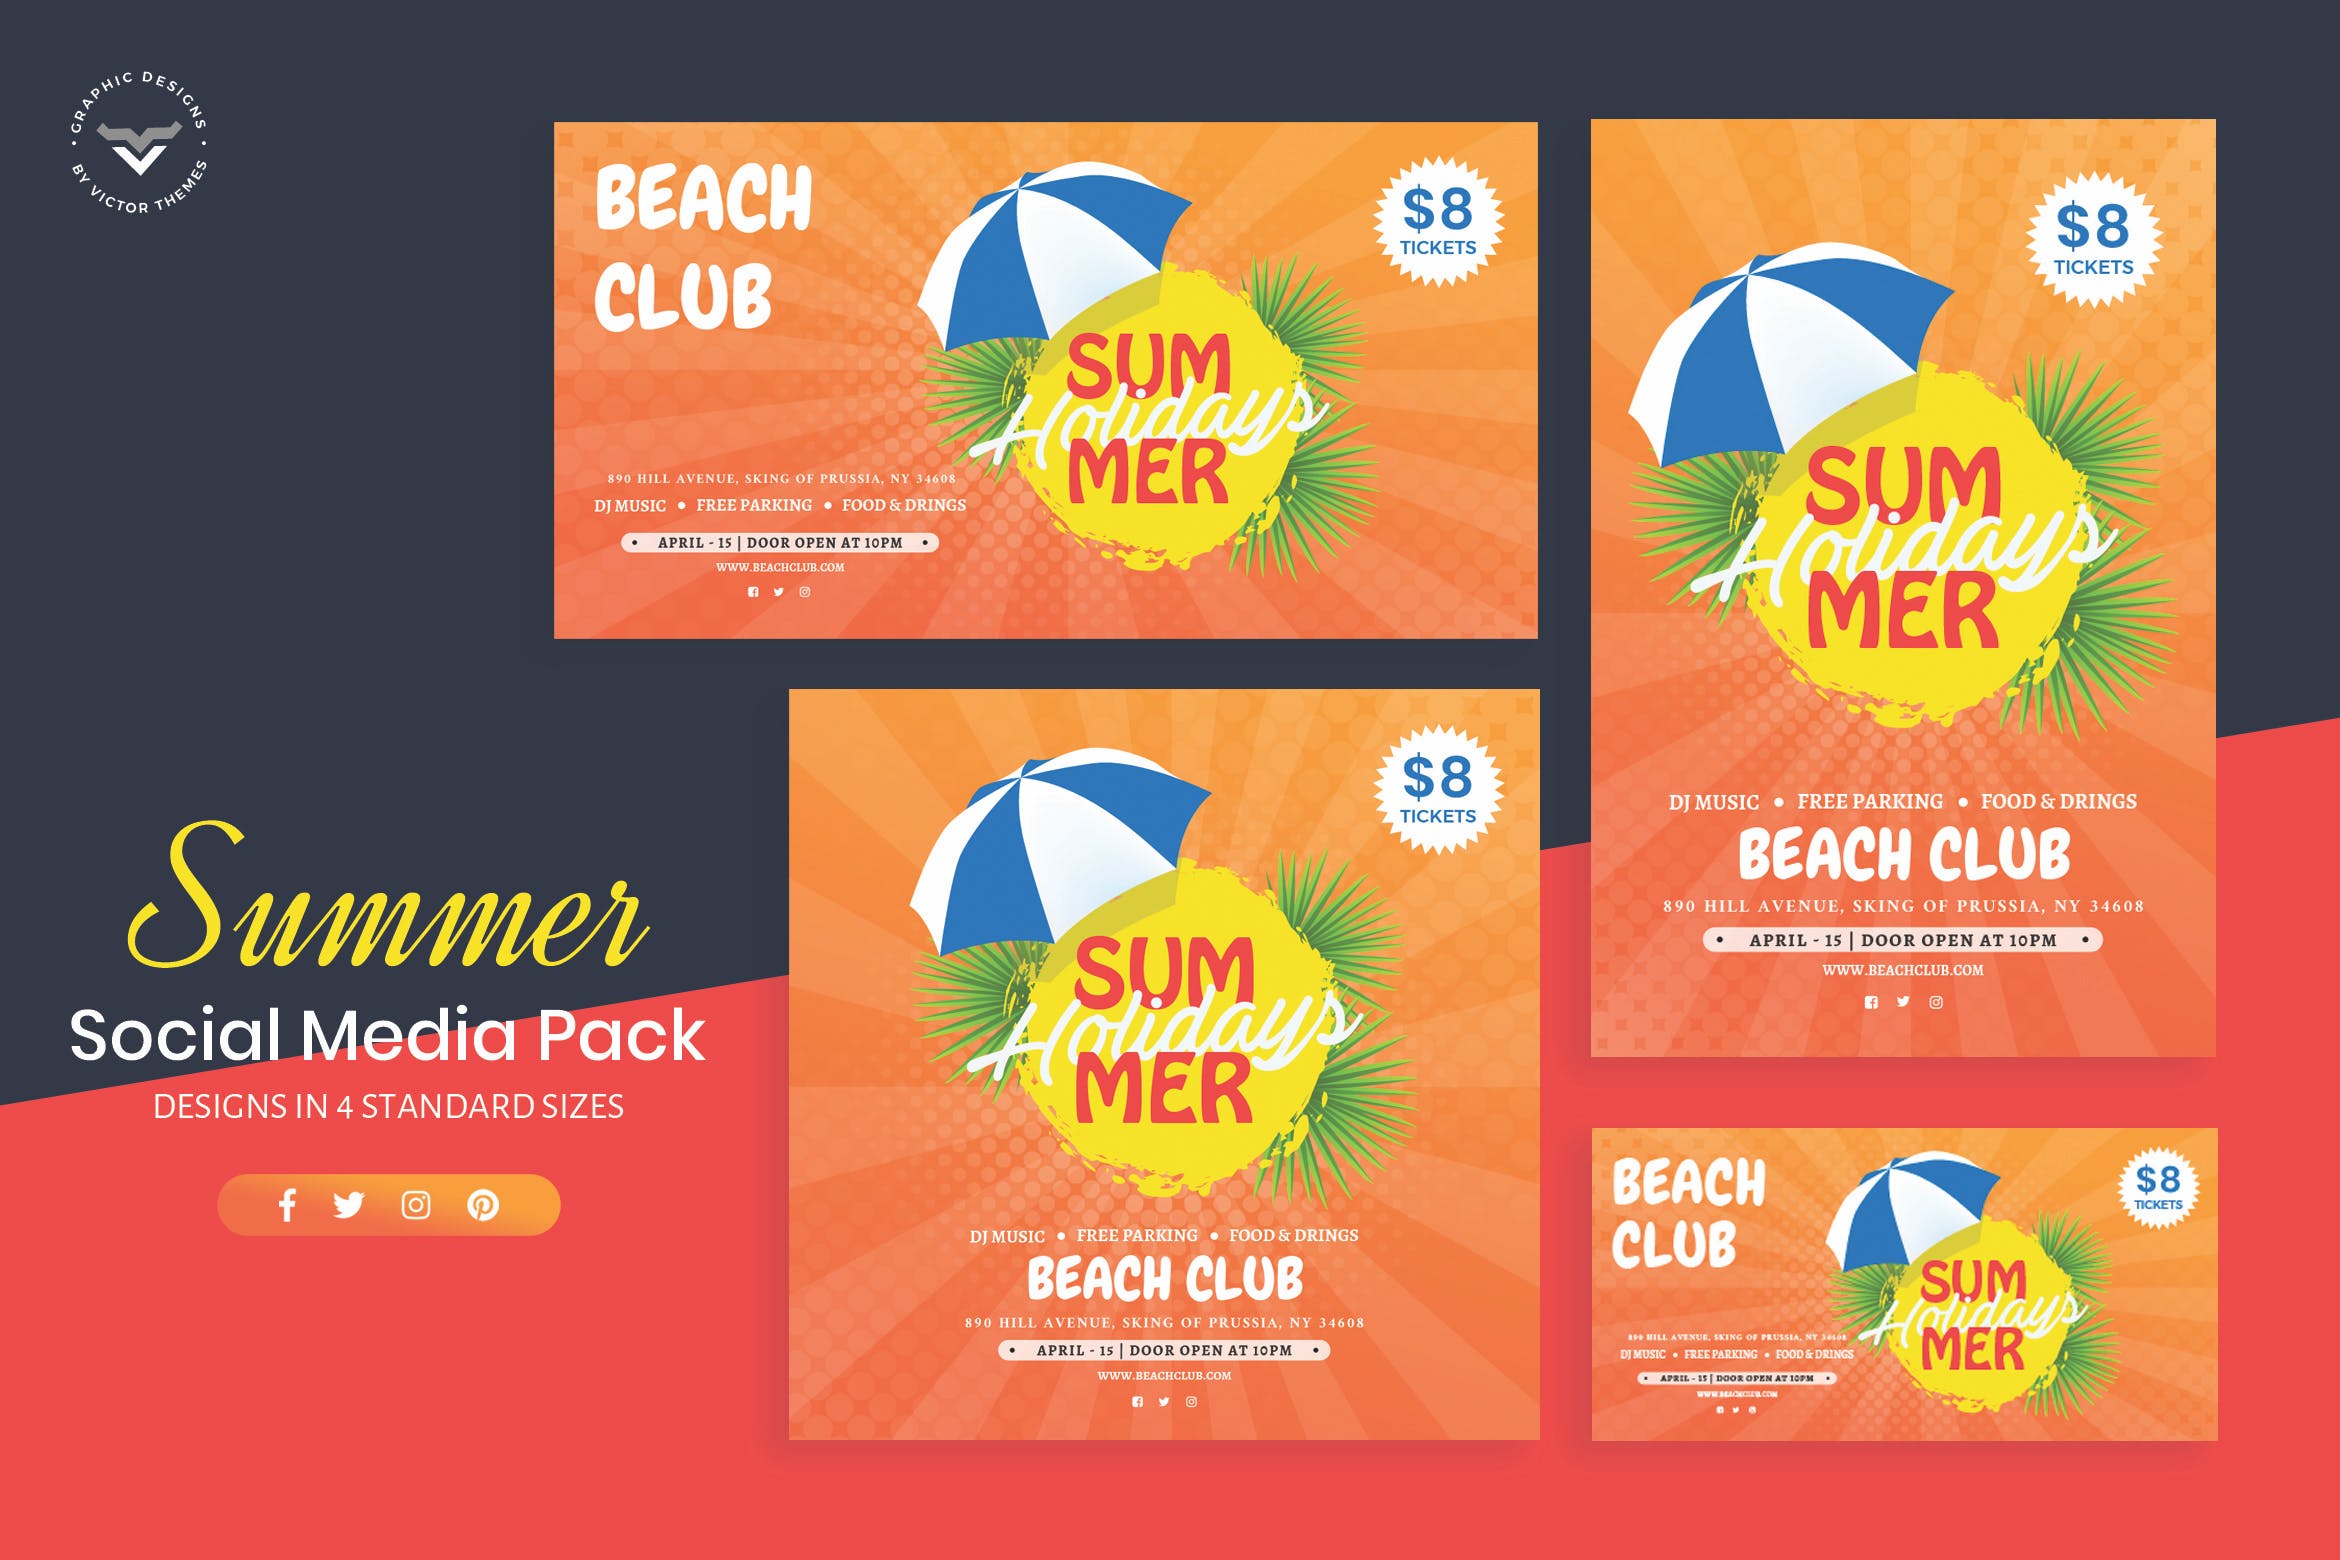 夏日主题社交媒体广告设计模板第一素材精选 Summer Social Media Template插图